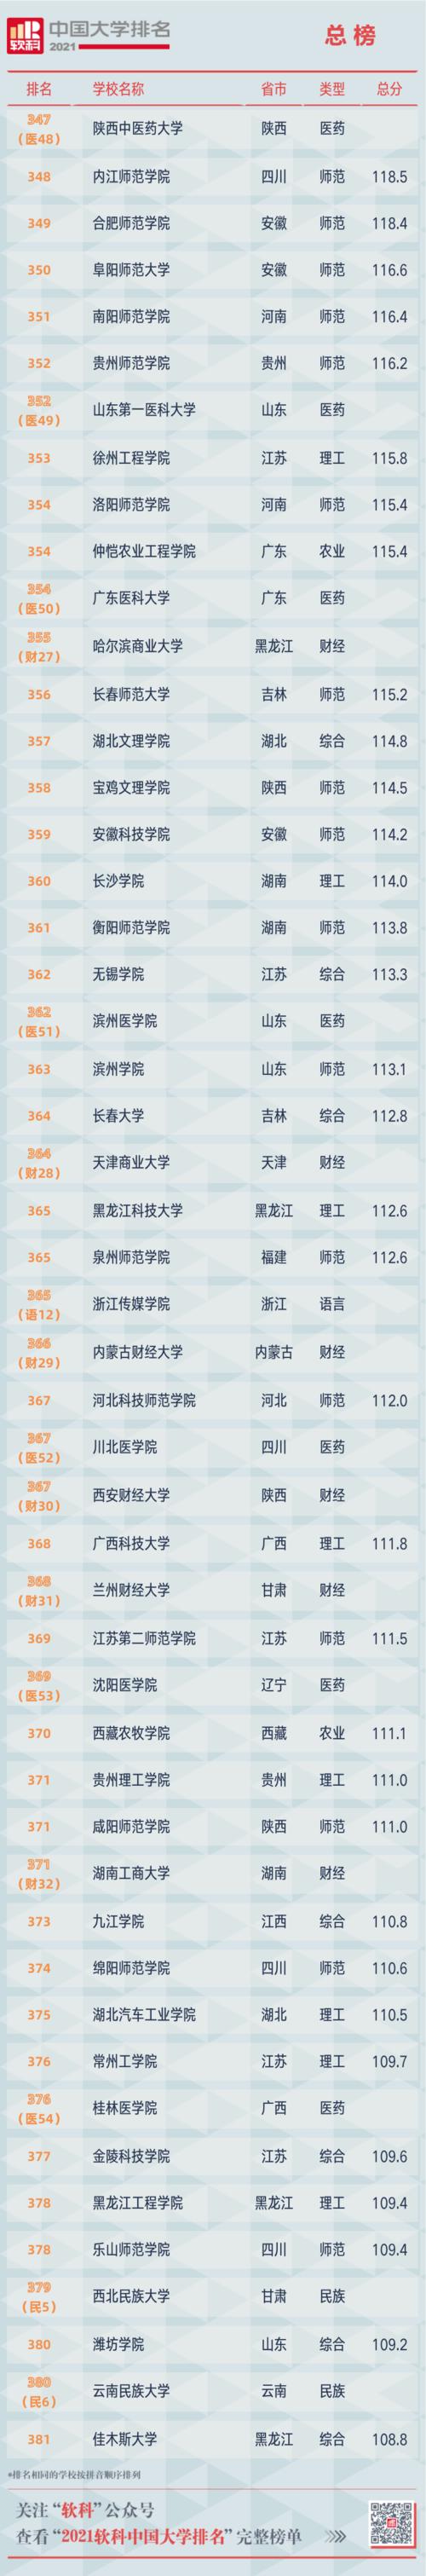 软科2021中国大学排行榜